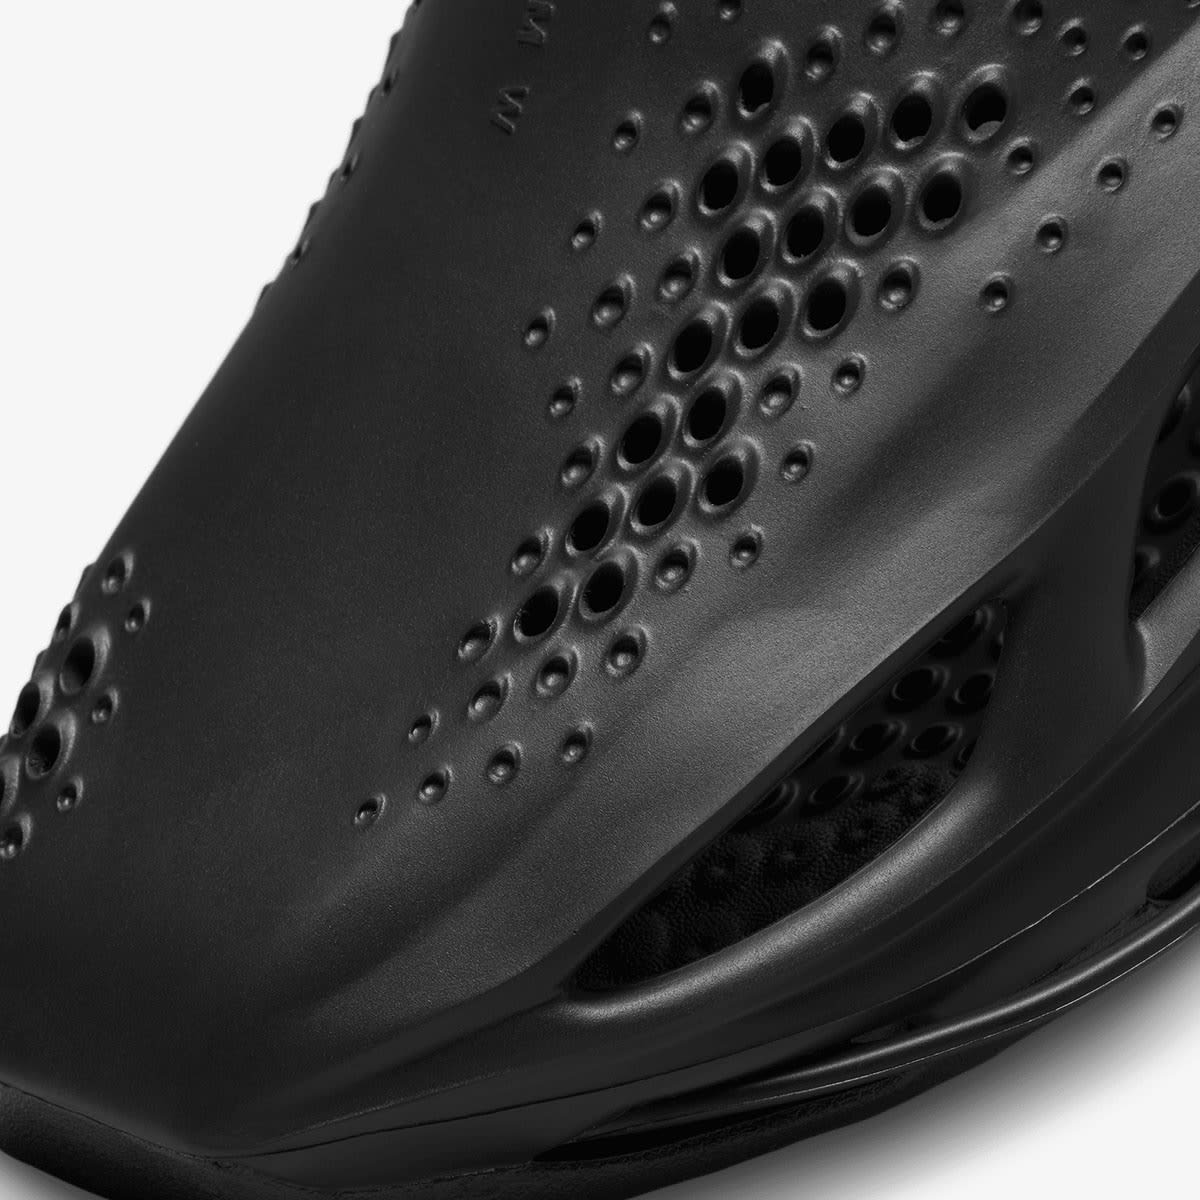 Nike x MMW 5 Slide (Black) | END. Launches